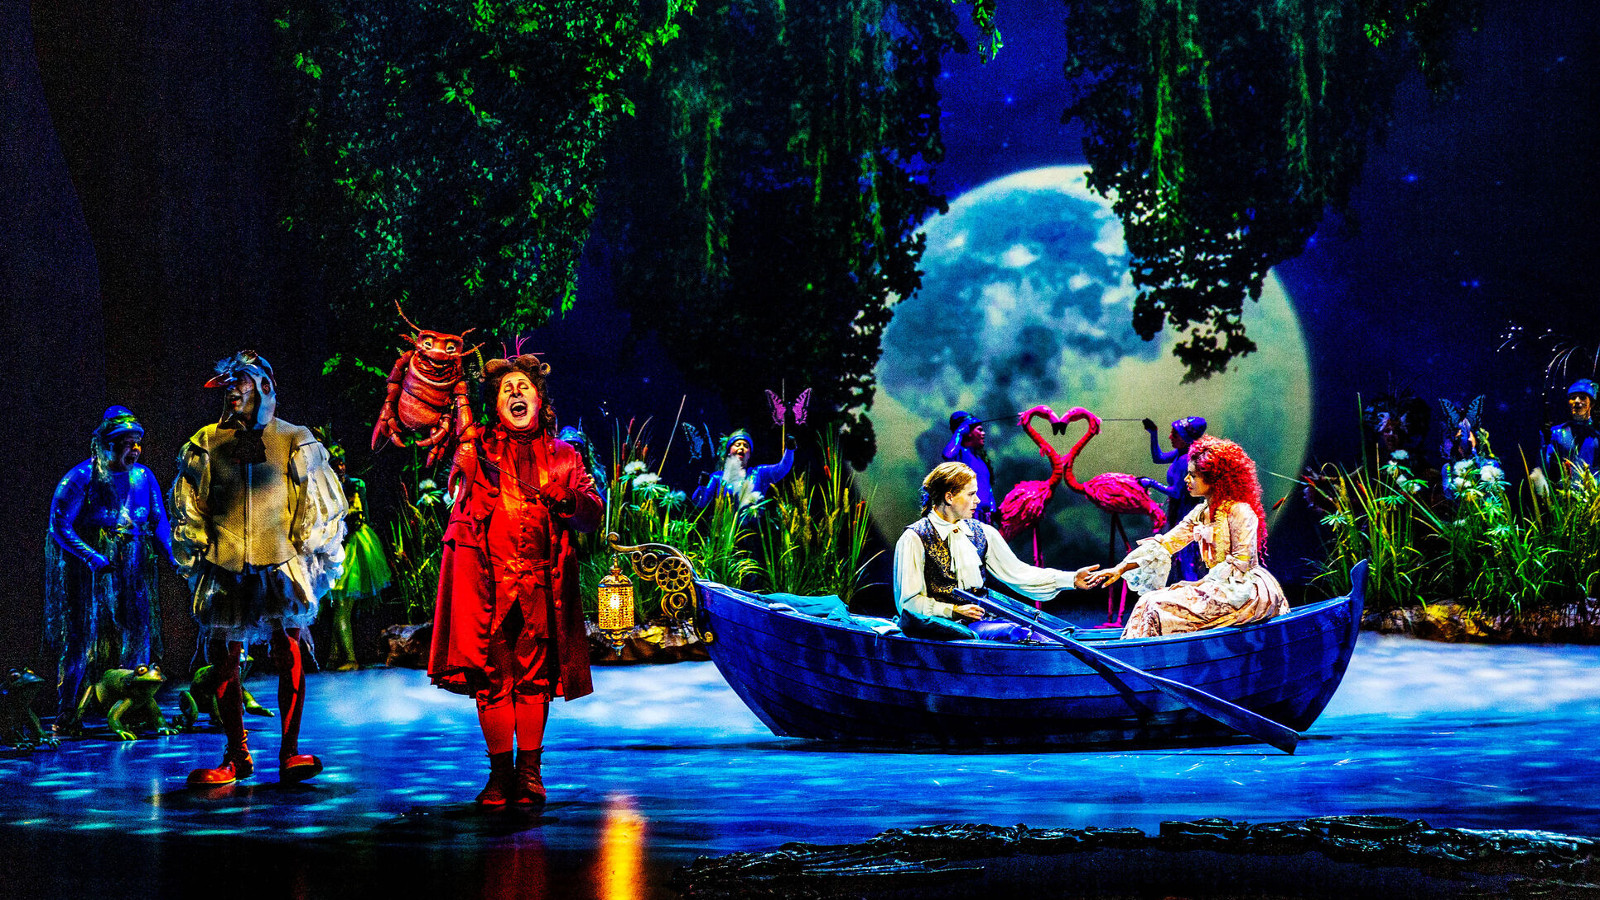 Kuvassa on lavalla on vasemmalla kolme hahmoa sinisissä ja punaisessa puvussa. Keskellä on sininen vene, jossa soutelevat tyttö ja poika. Taustalla on täysikuu ja ylhäältä roikkuu vihreitä oksia.